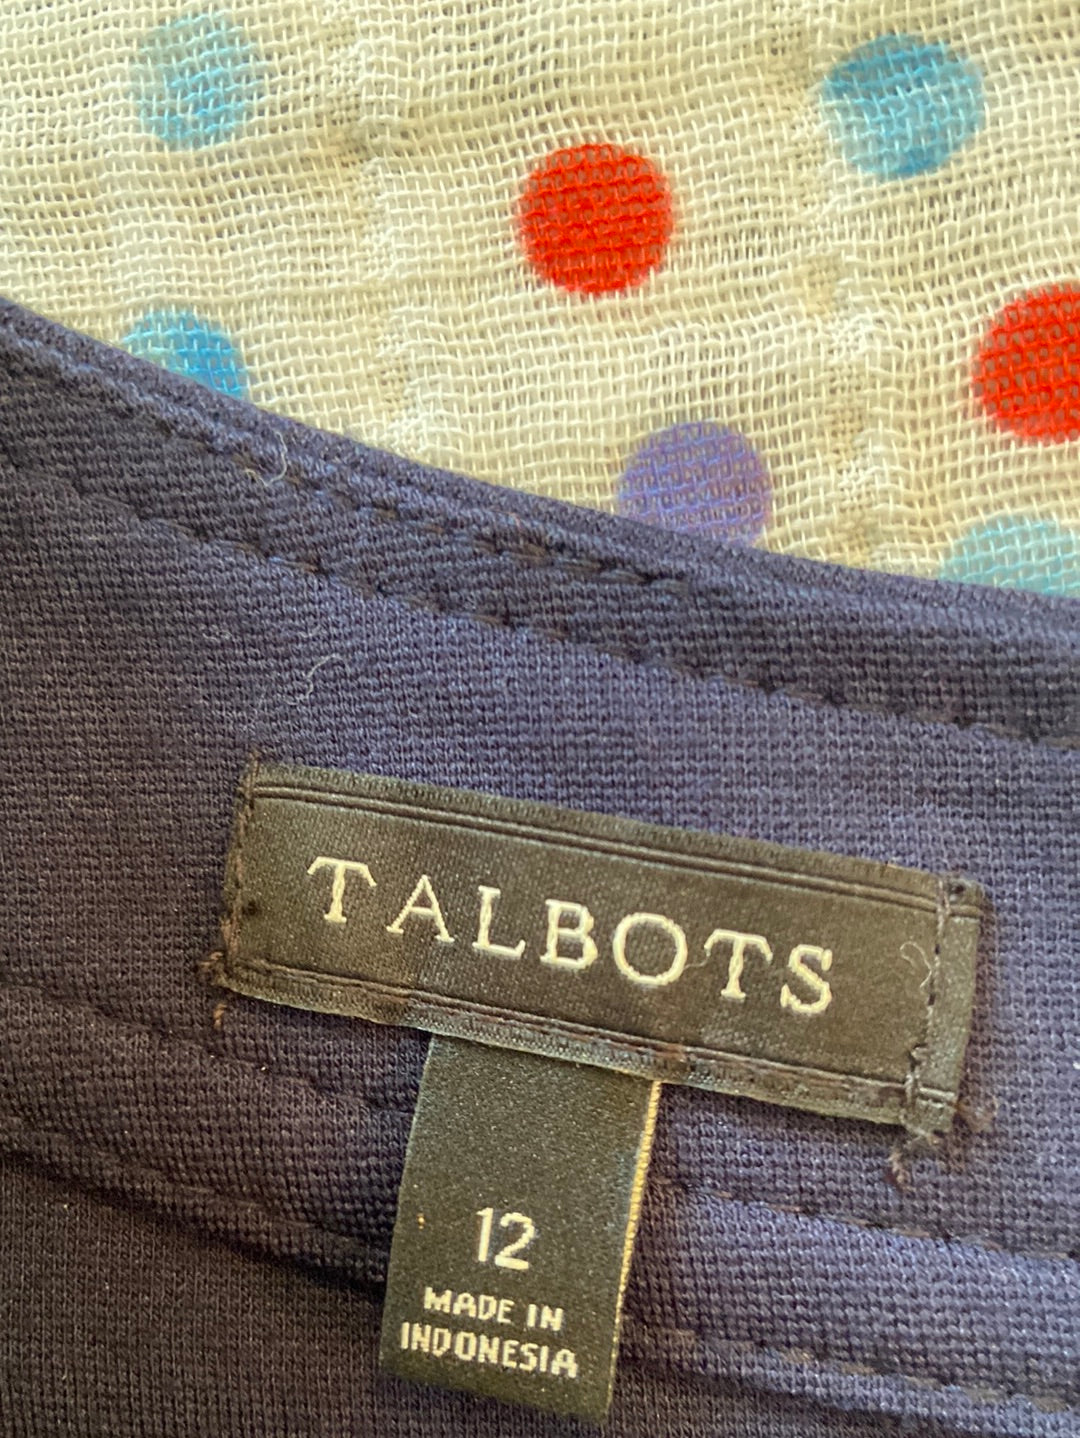 BLUE BEAUTY Talbots Size 12